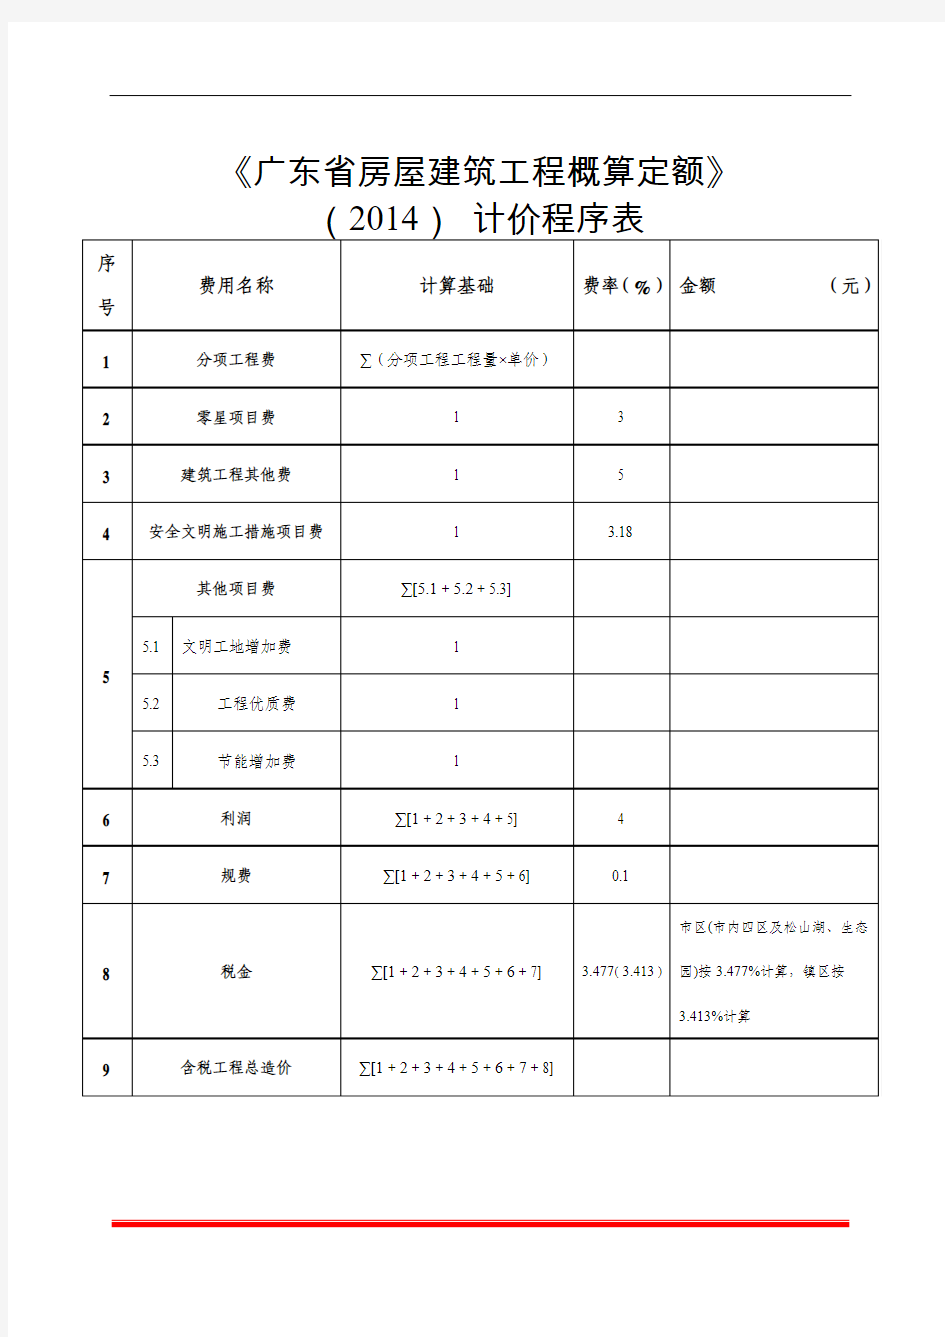 《广东省房屋建筑工程概算定额》(2014)计价程序表